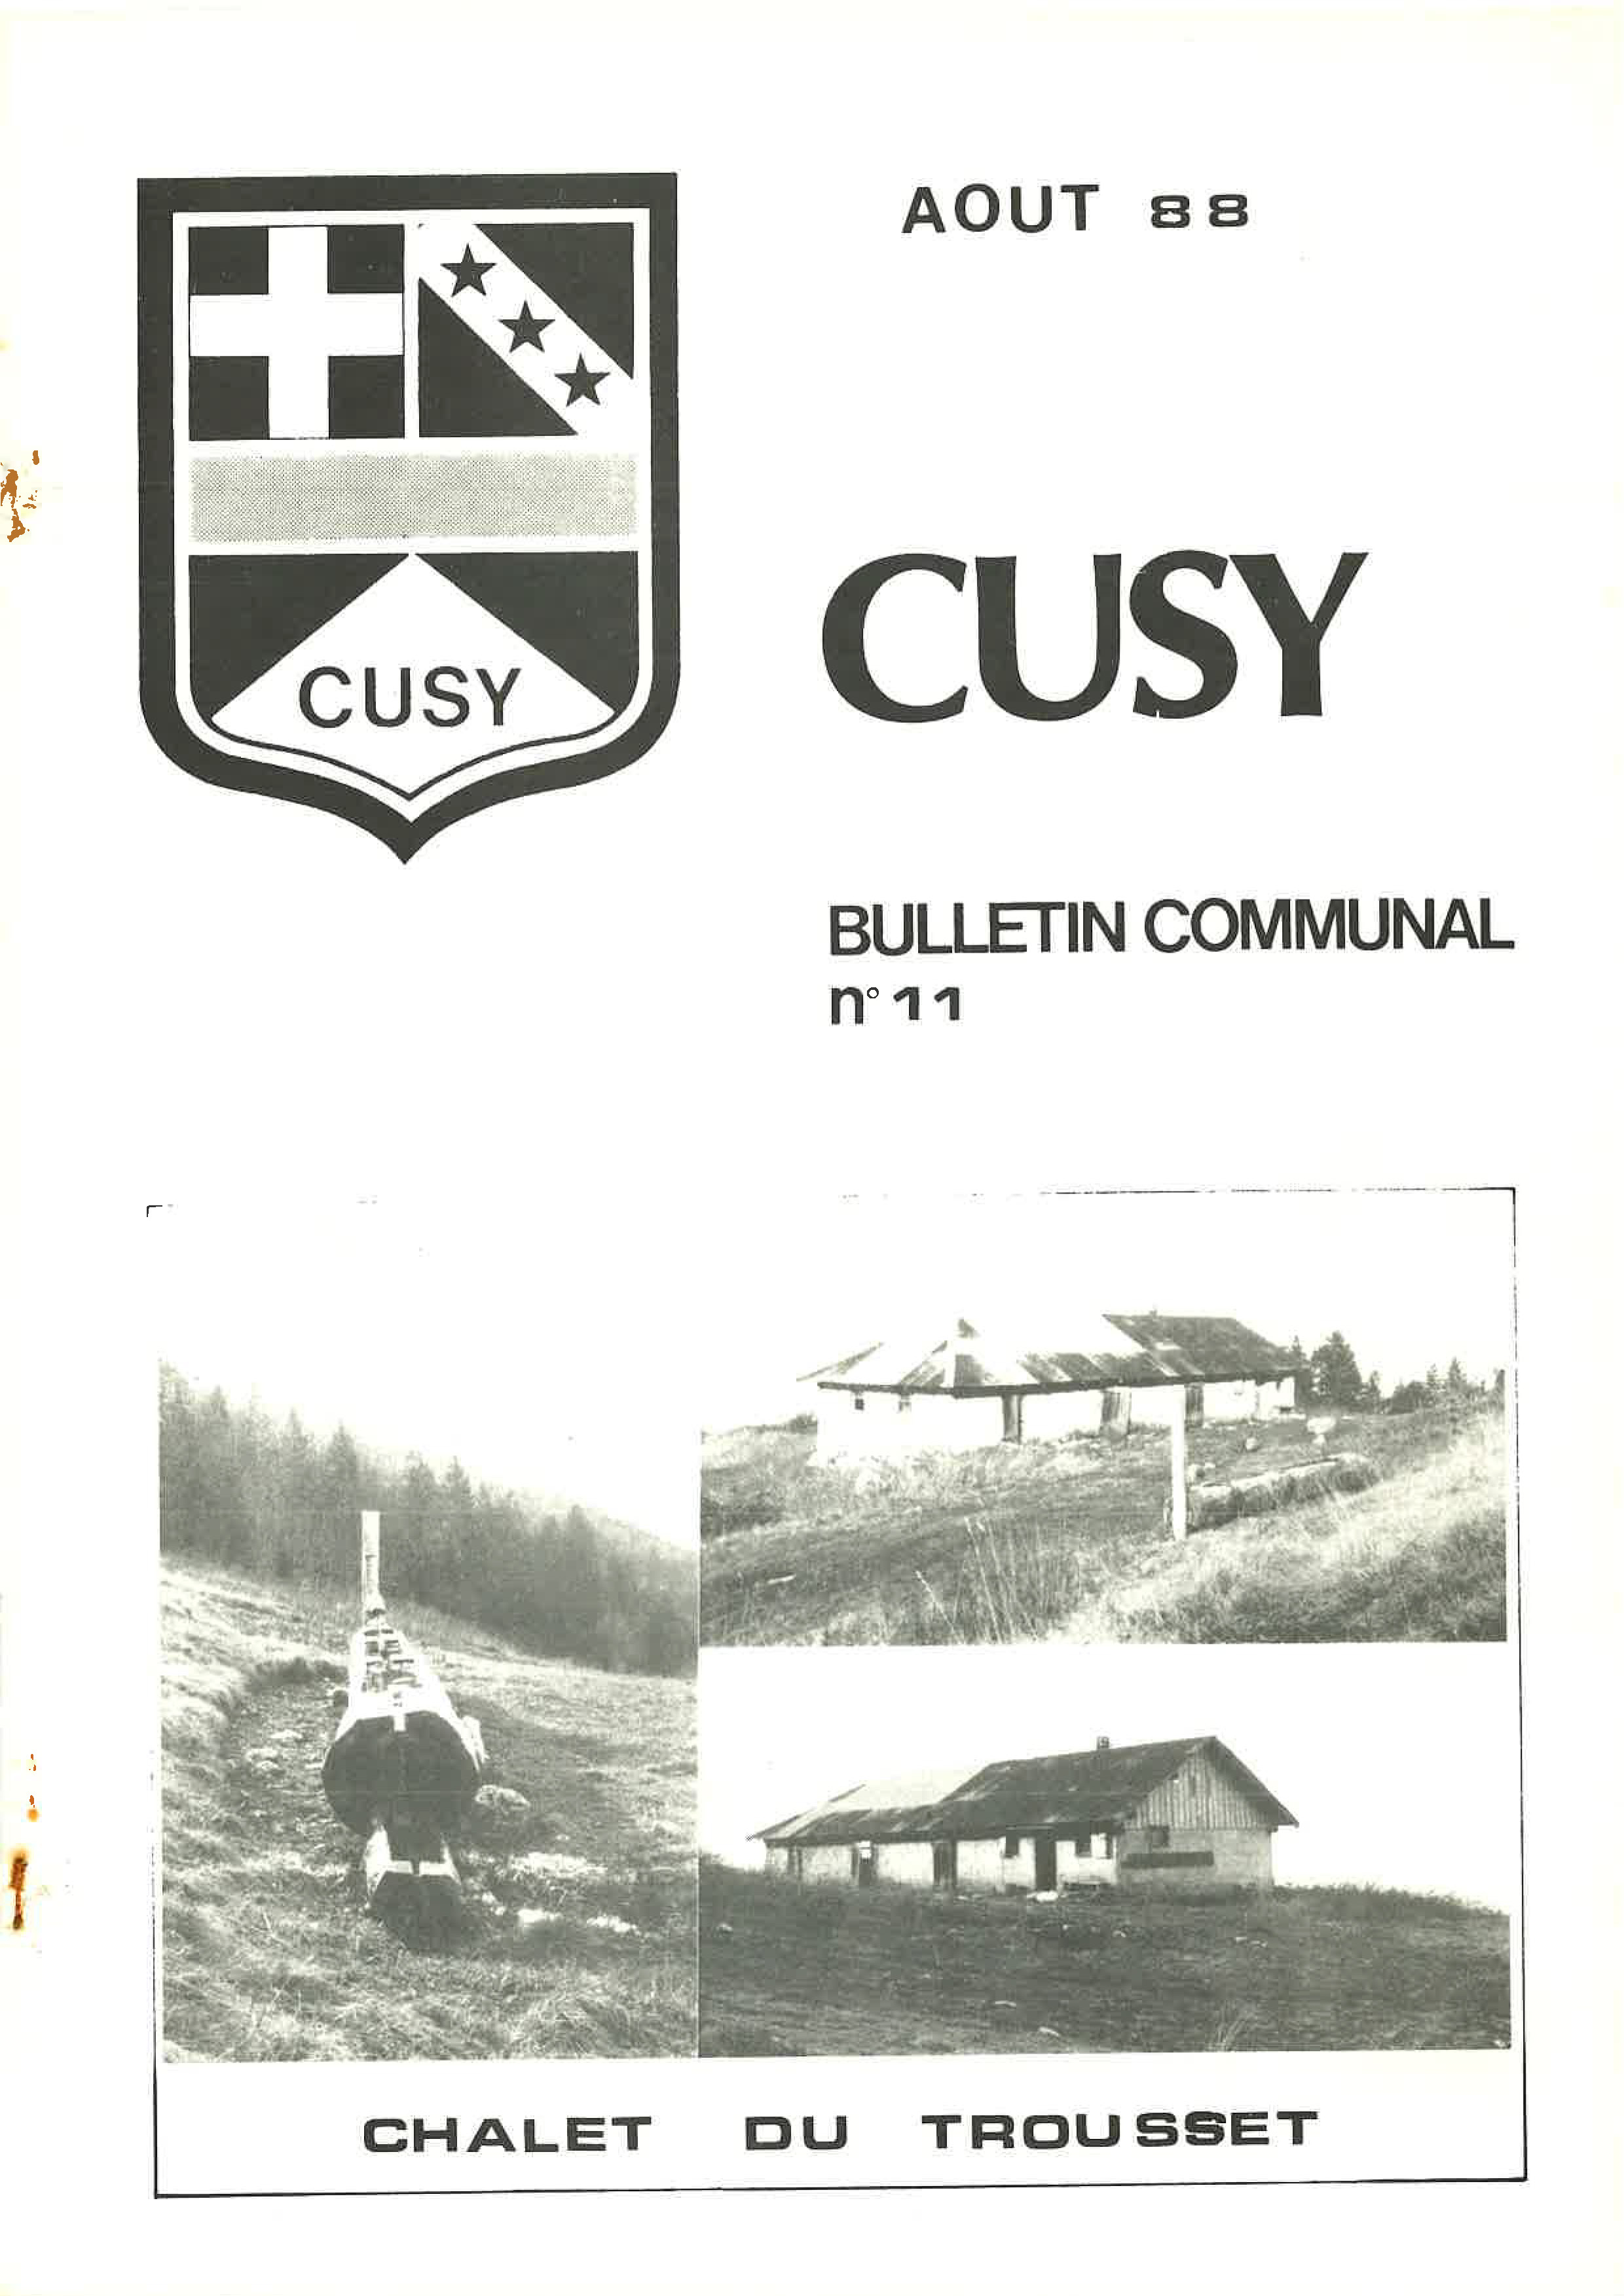 1988 08 Bulletin communal n°11_Page_01.jpg